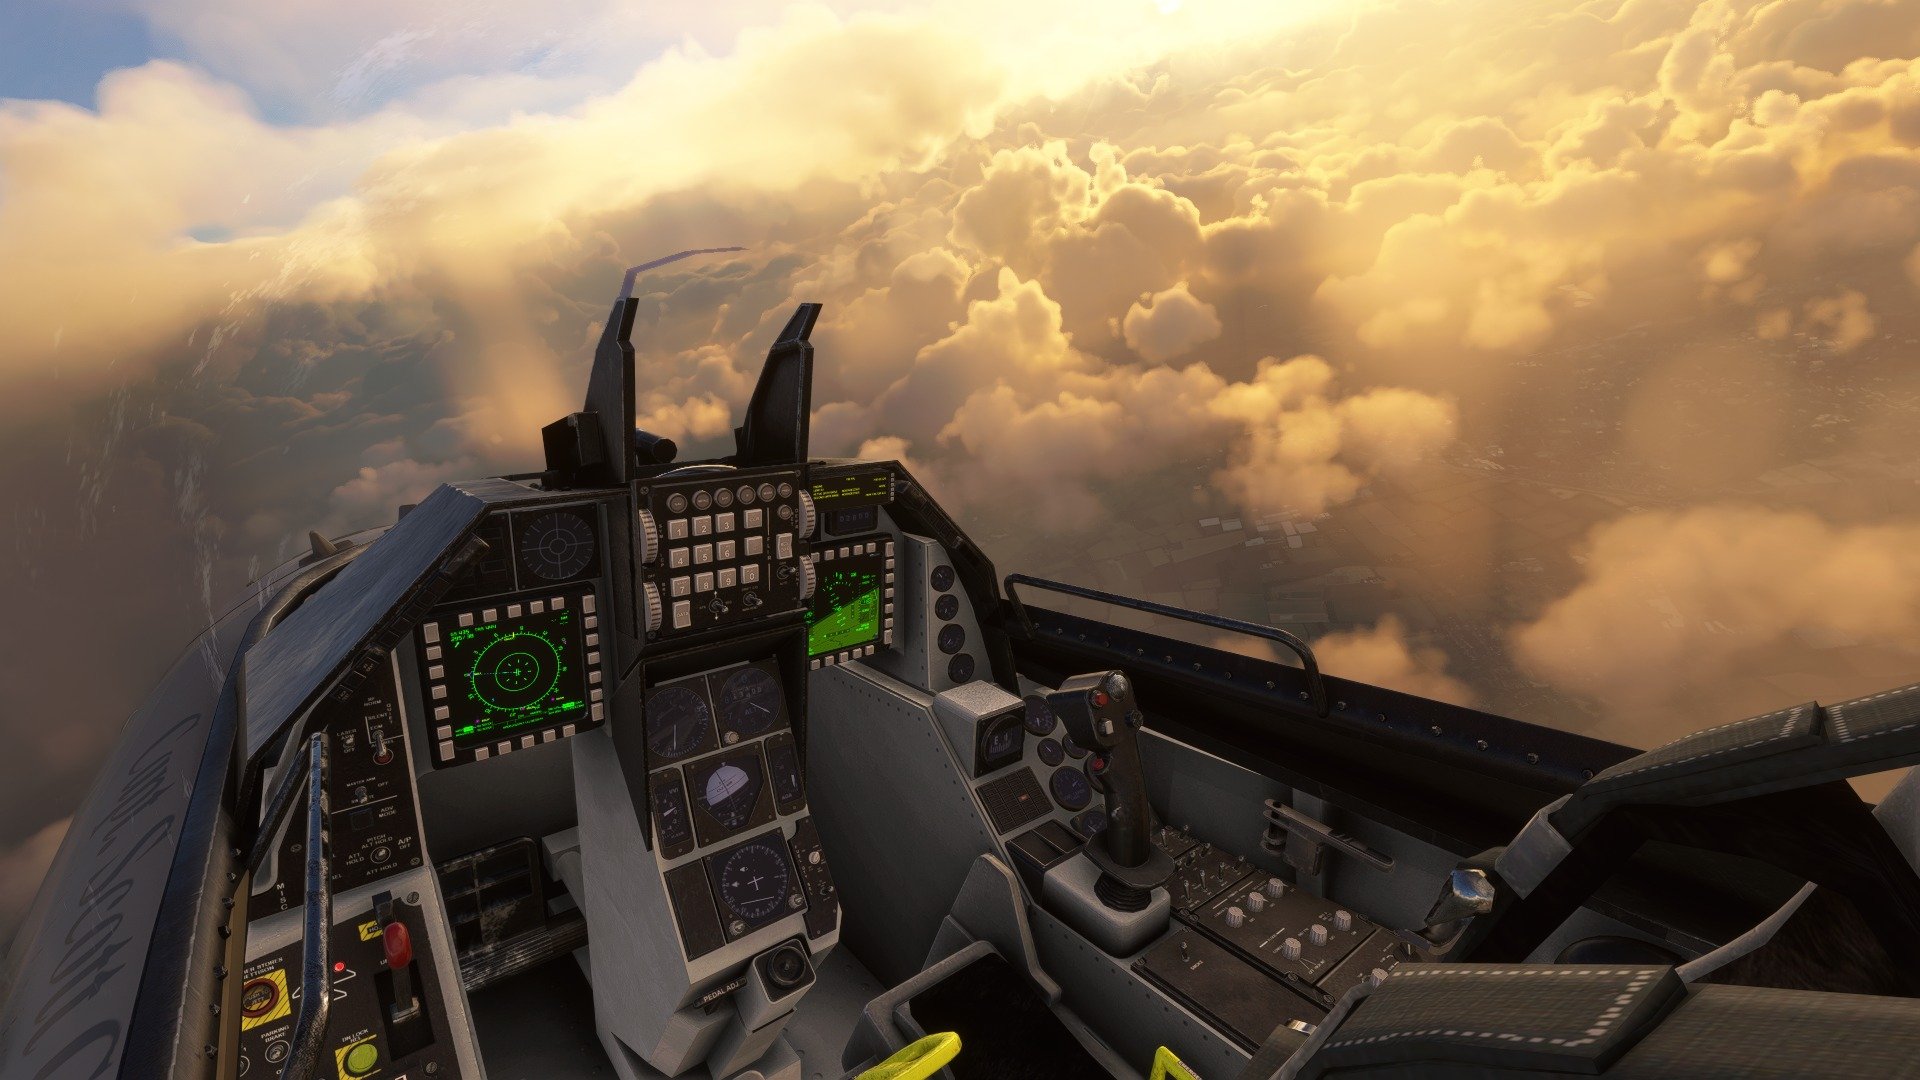 Microsoft Flight Simulator révèle la date de sortie du nouvel avion Kodiak. - Microsoft Flight Simulator révèle la date de sortie de son nouvel avion Kodiak et nous avons de nouvelles images du F-16 et de la ville de Busan.